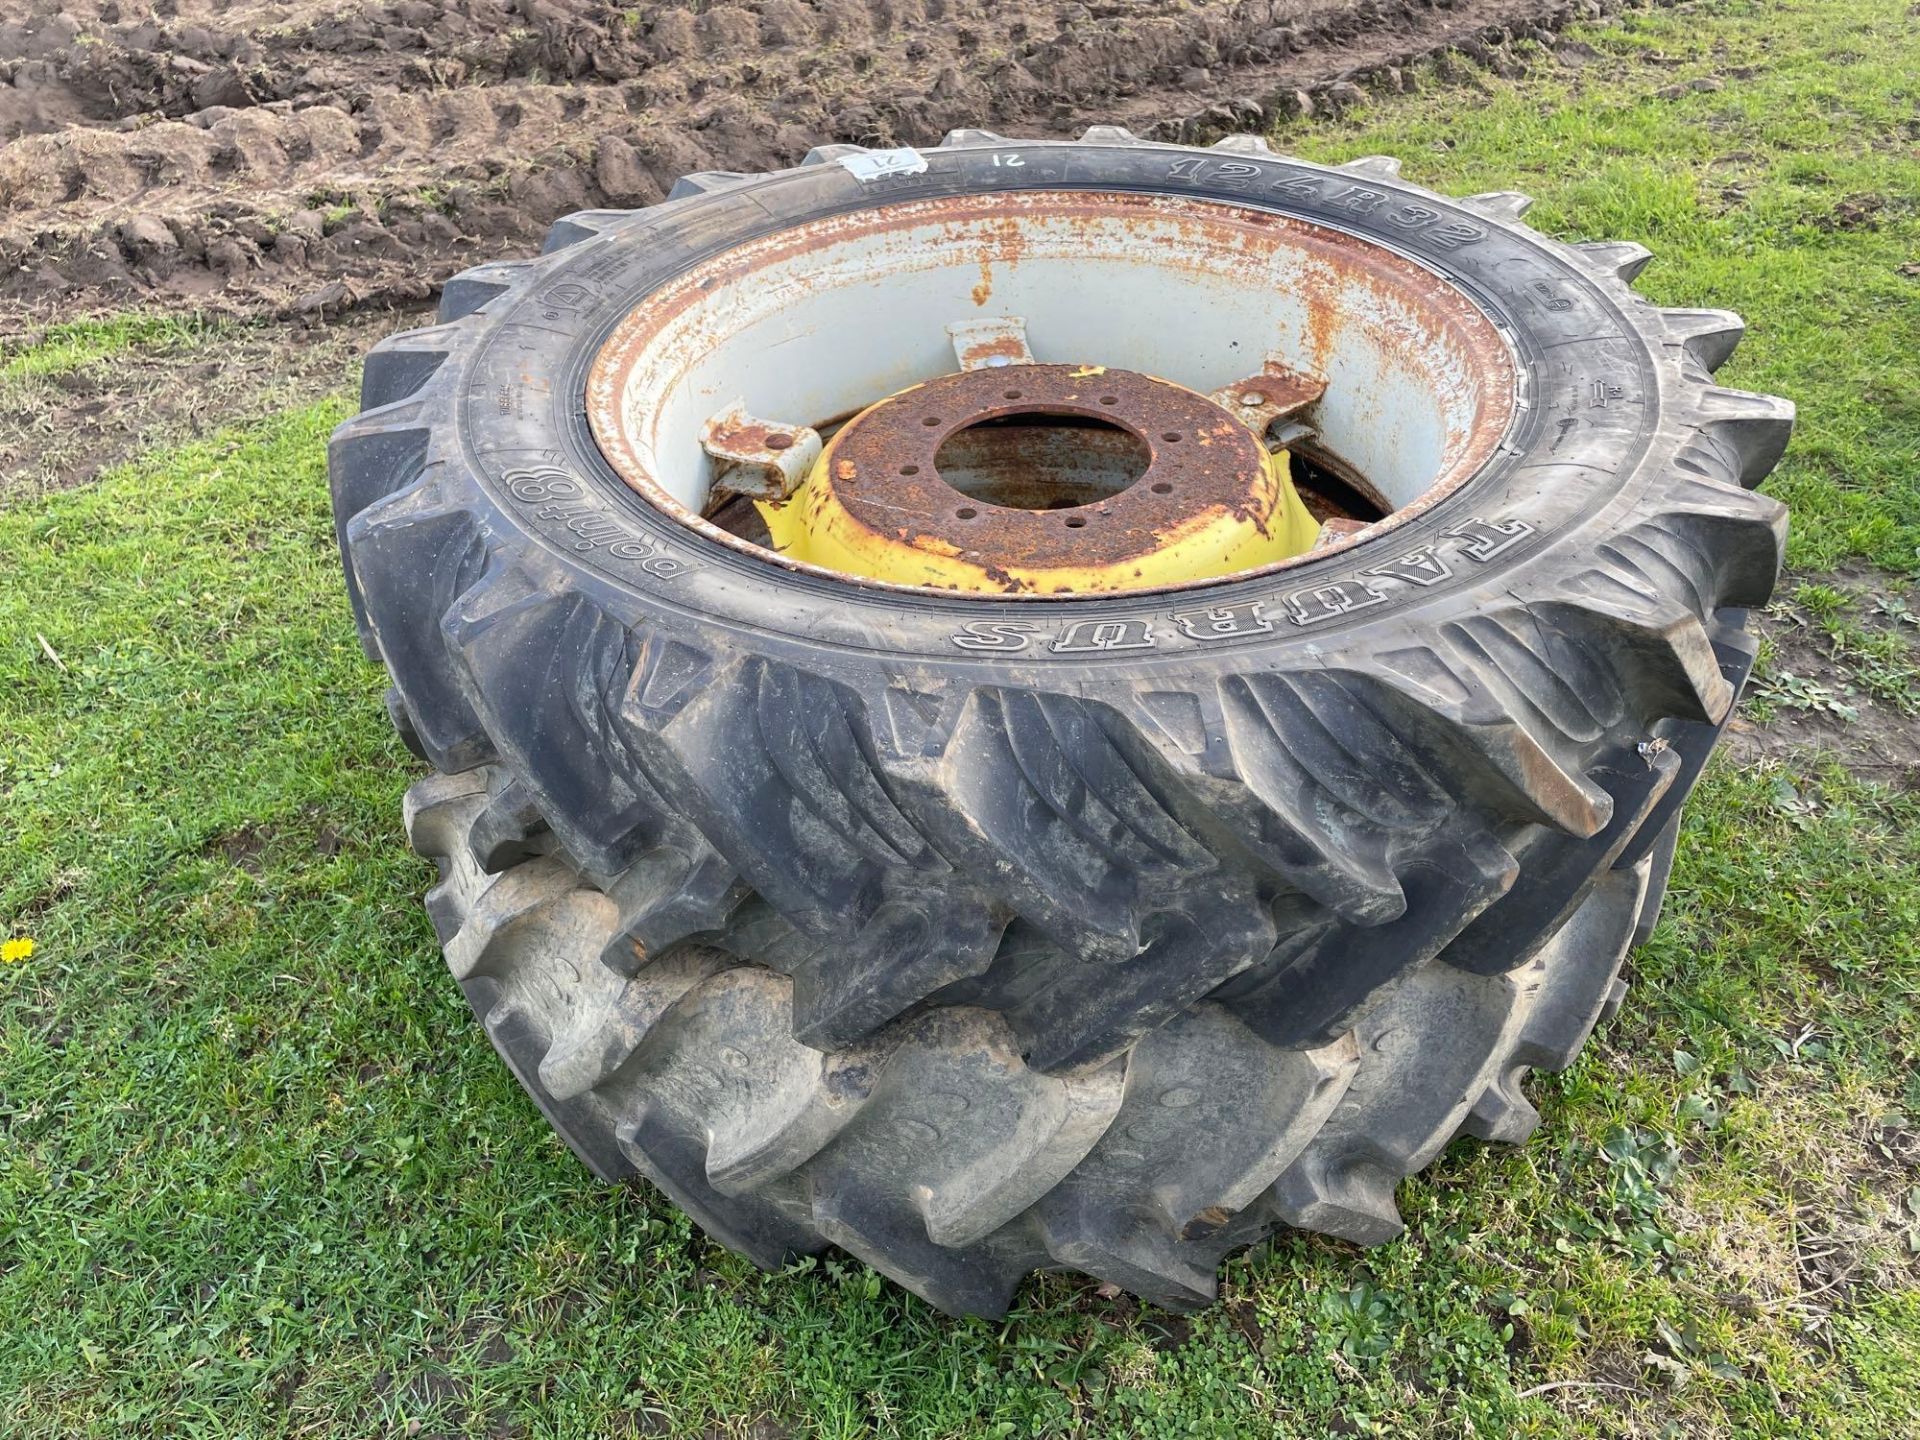 Pair of 12.4 R32 8 stud wheels & tyres - Image 2 of 2